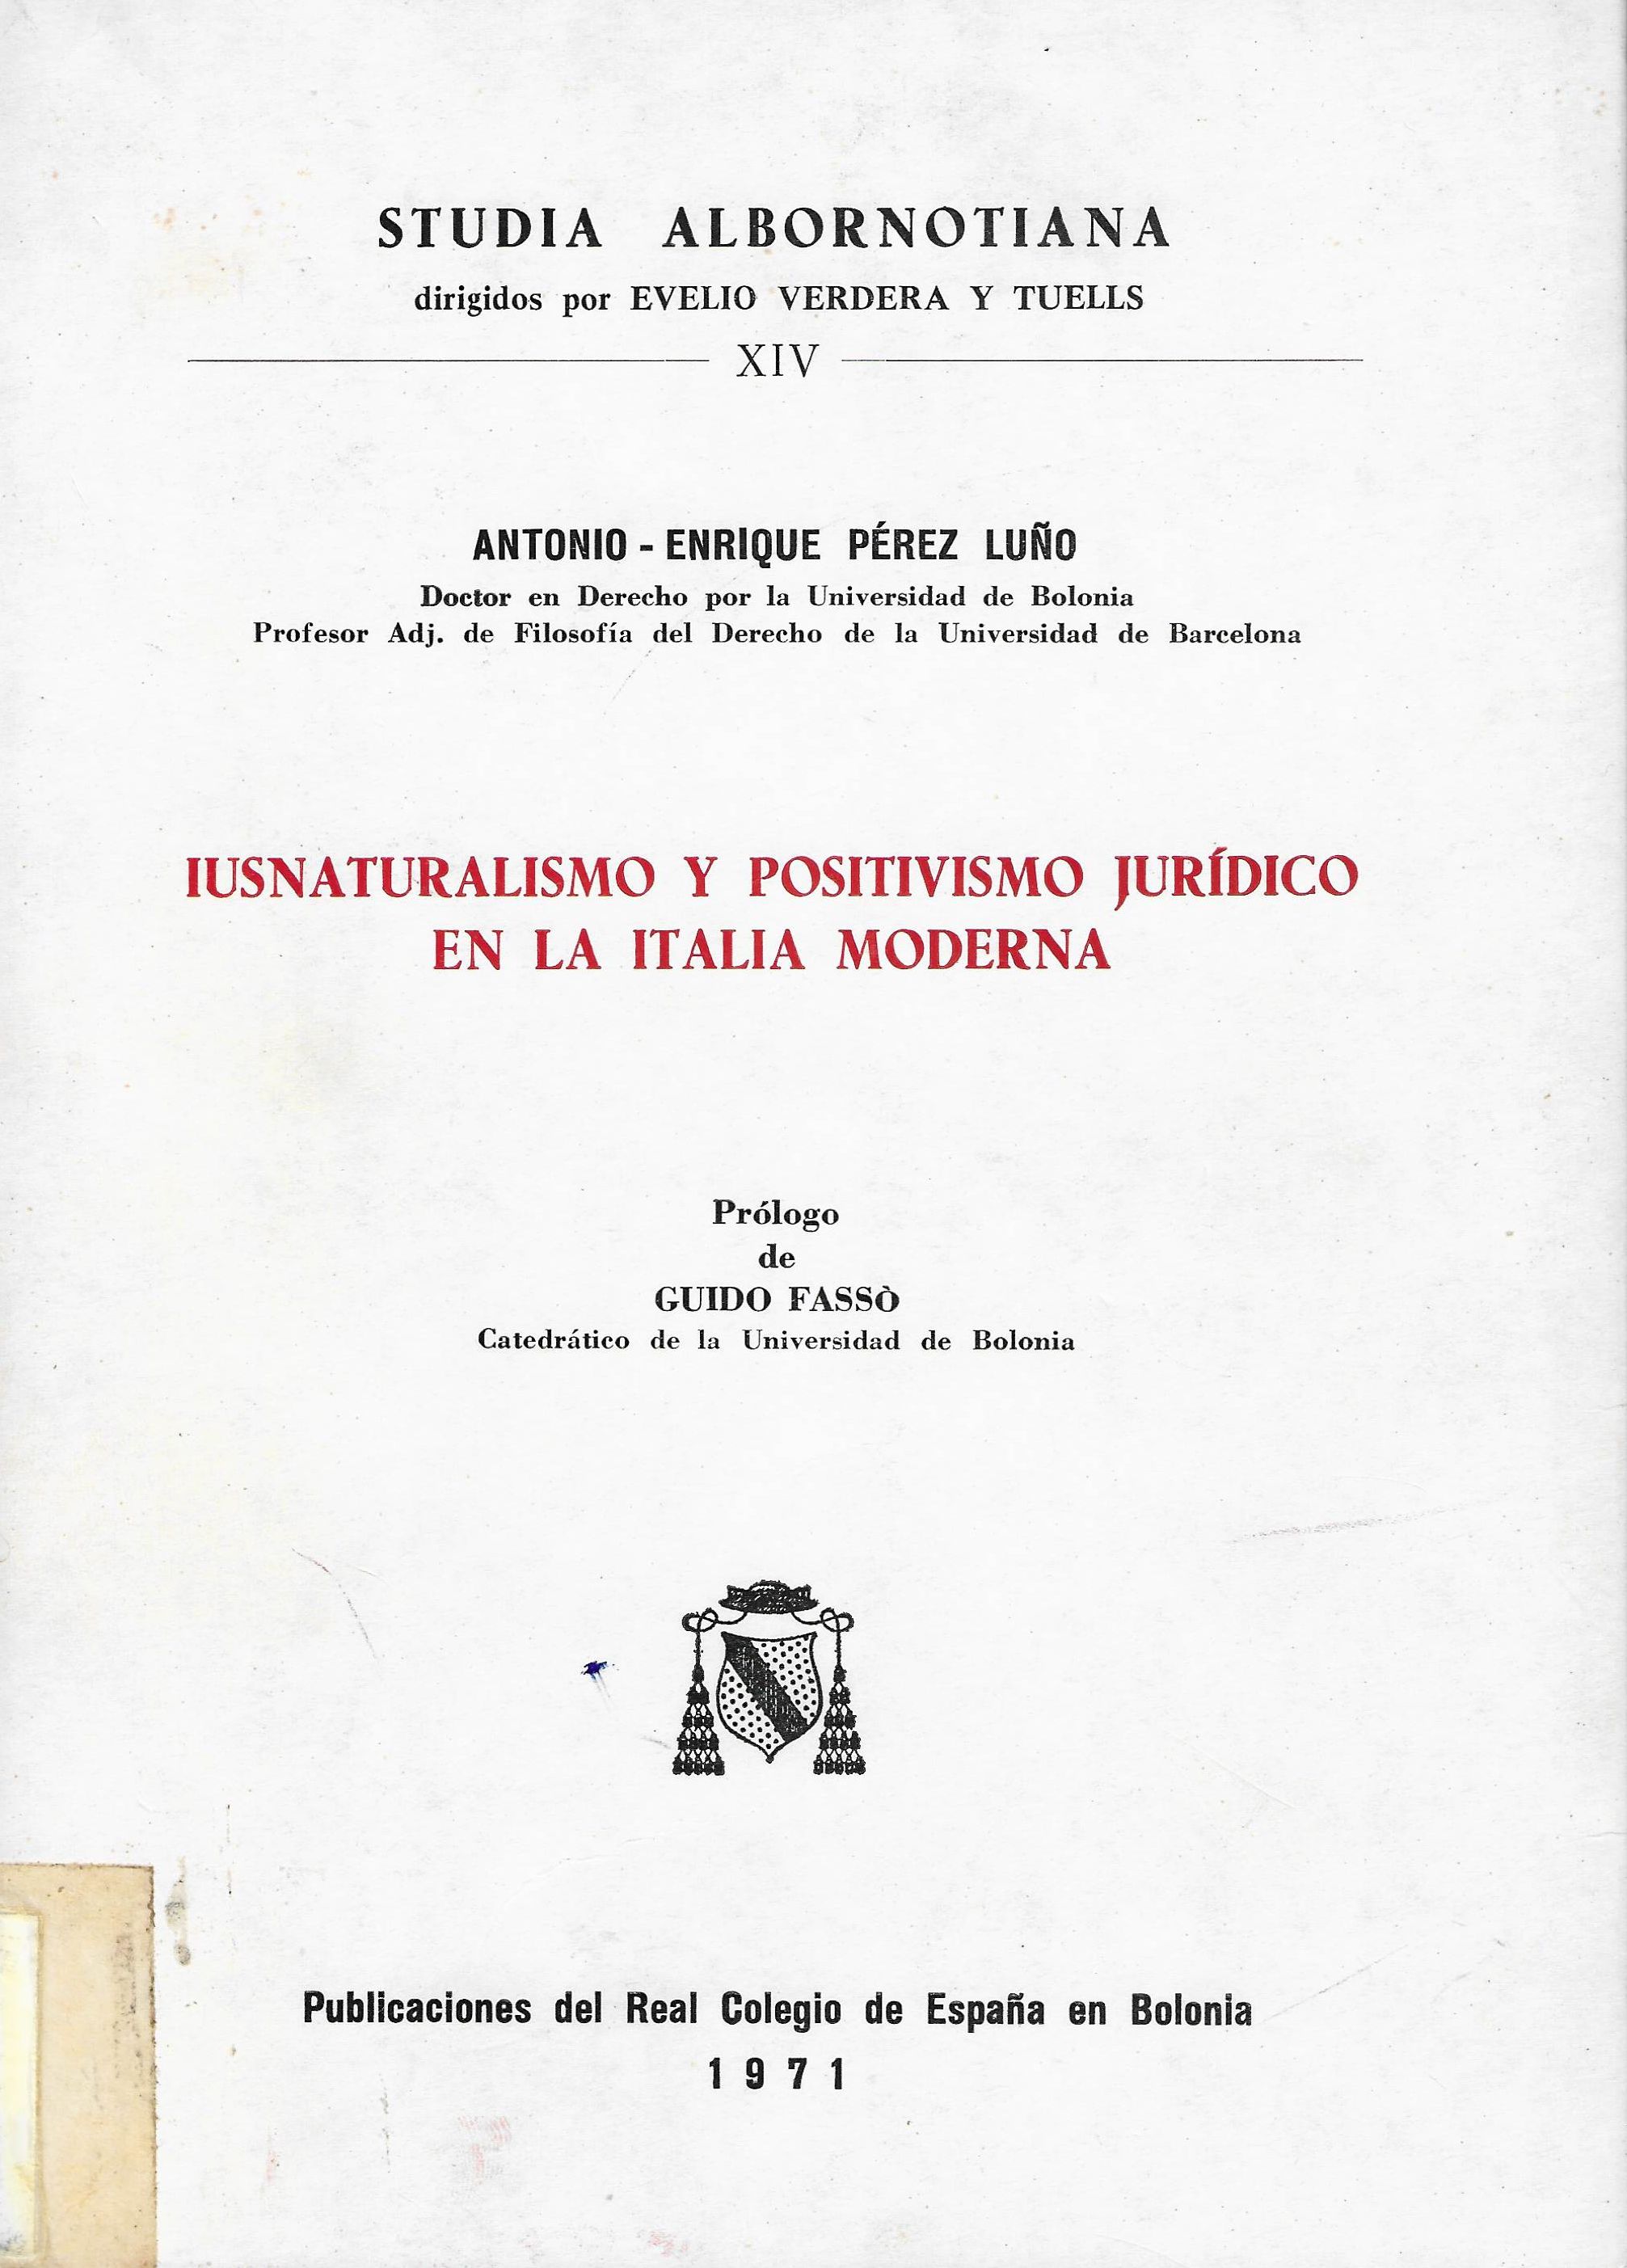 Imagen de portada del libro Iusnaturalismo y positivismo jurídico en la Italia moderna